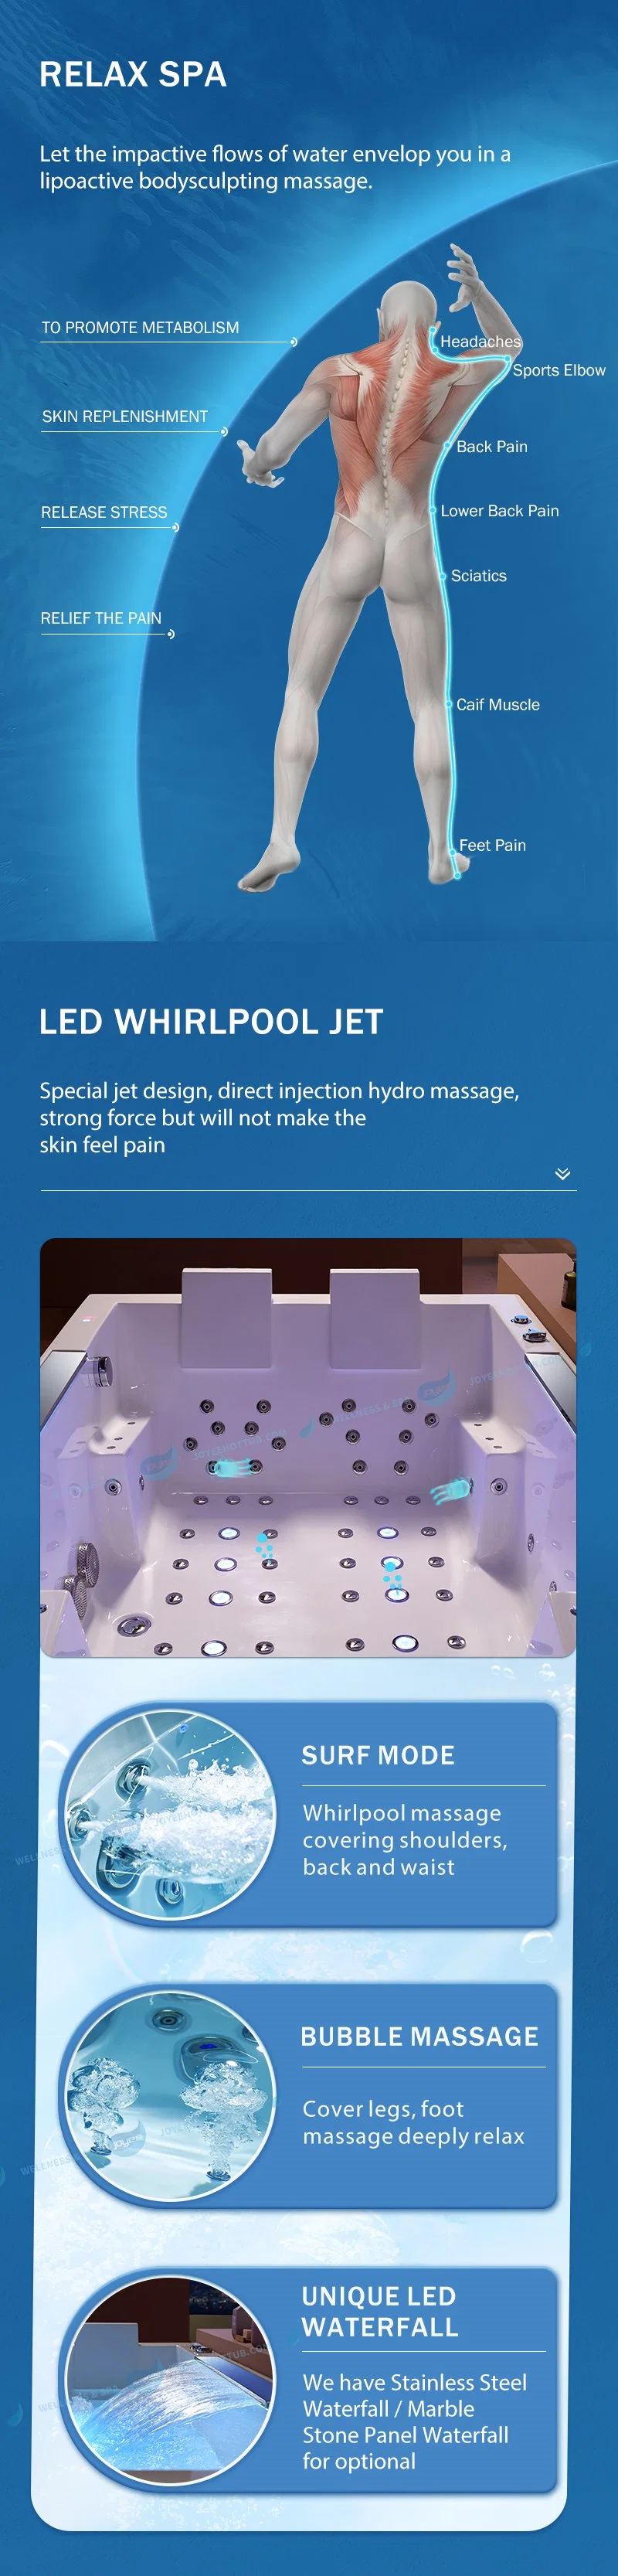 Joyee Luxury Bathtub Acrylic Hydro Massage Jet SPA Indoor LED Light Whirlpool Bathtub 1-2 People Shower Tub